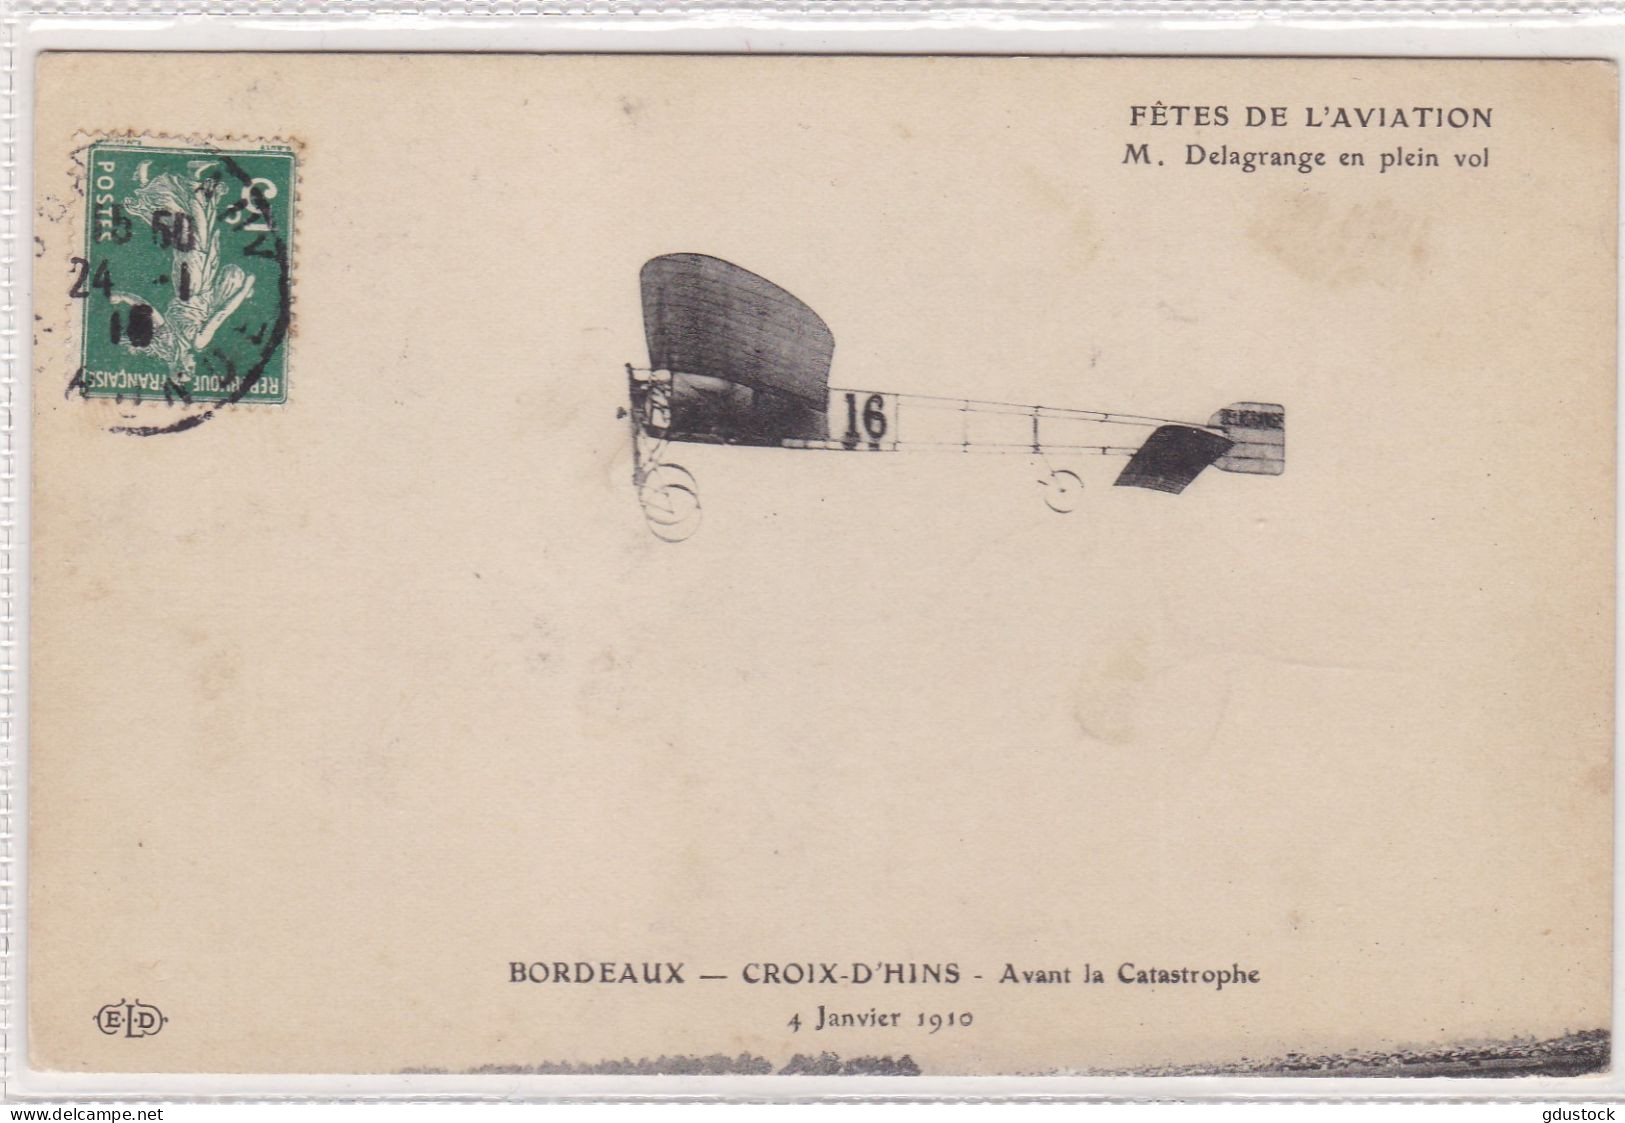 Fêtes De L'Aviation - M. Delagrange En Plein Vol - Bordeaux - Croix D'Hins - Avant La Catastrophe 4 Janvier 1910 - Aviatori